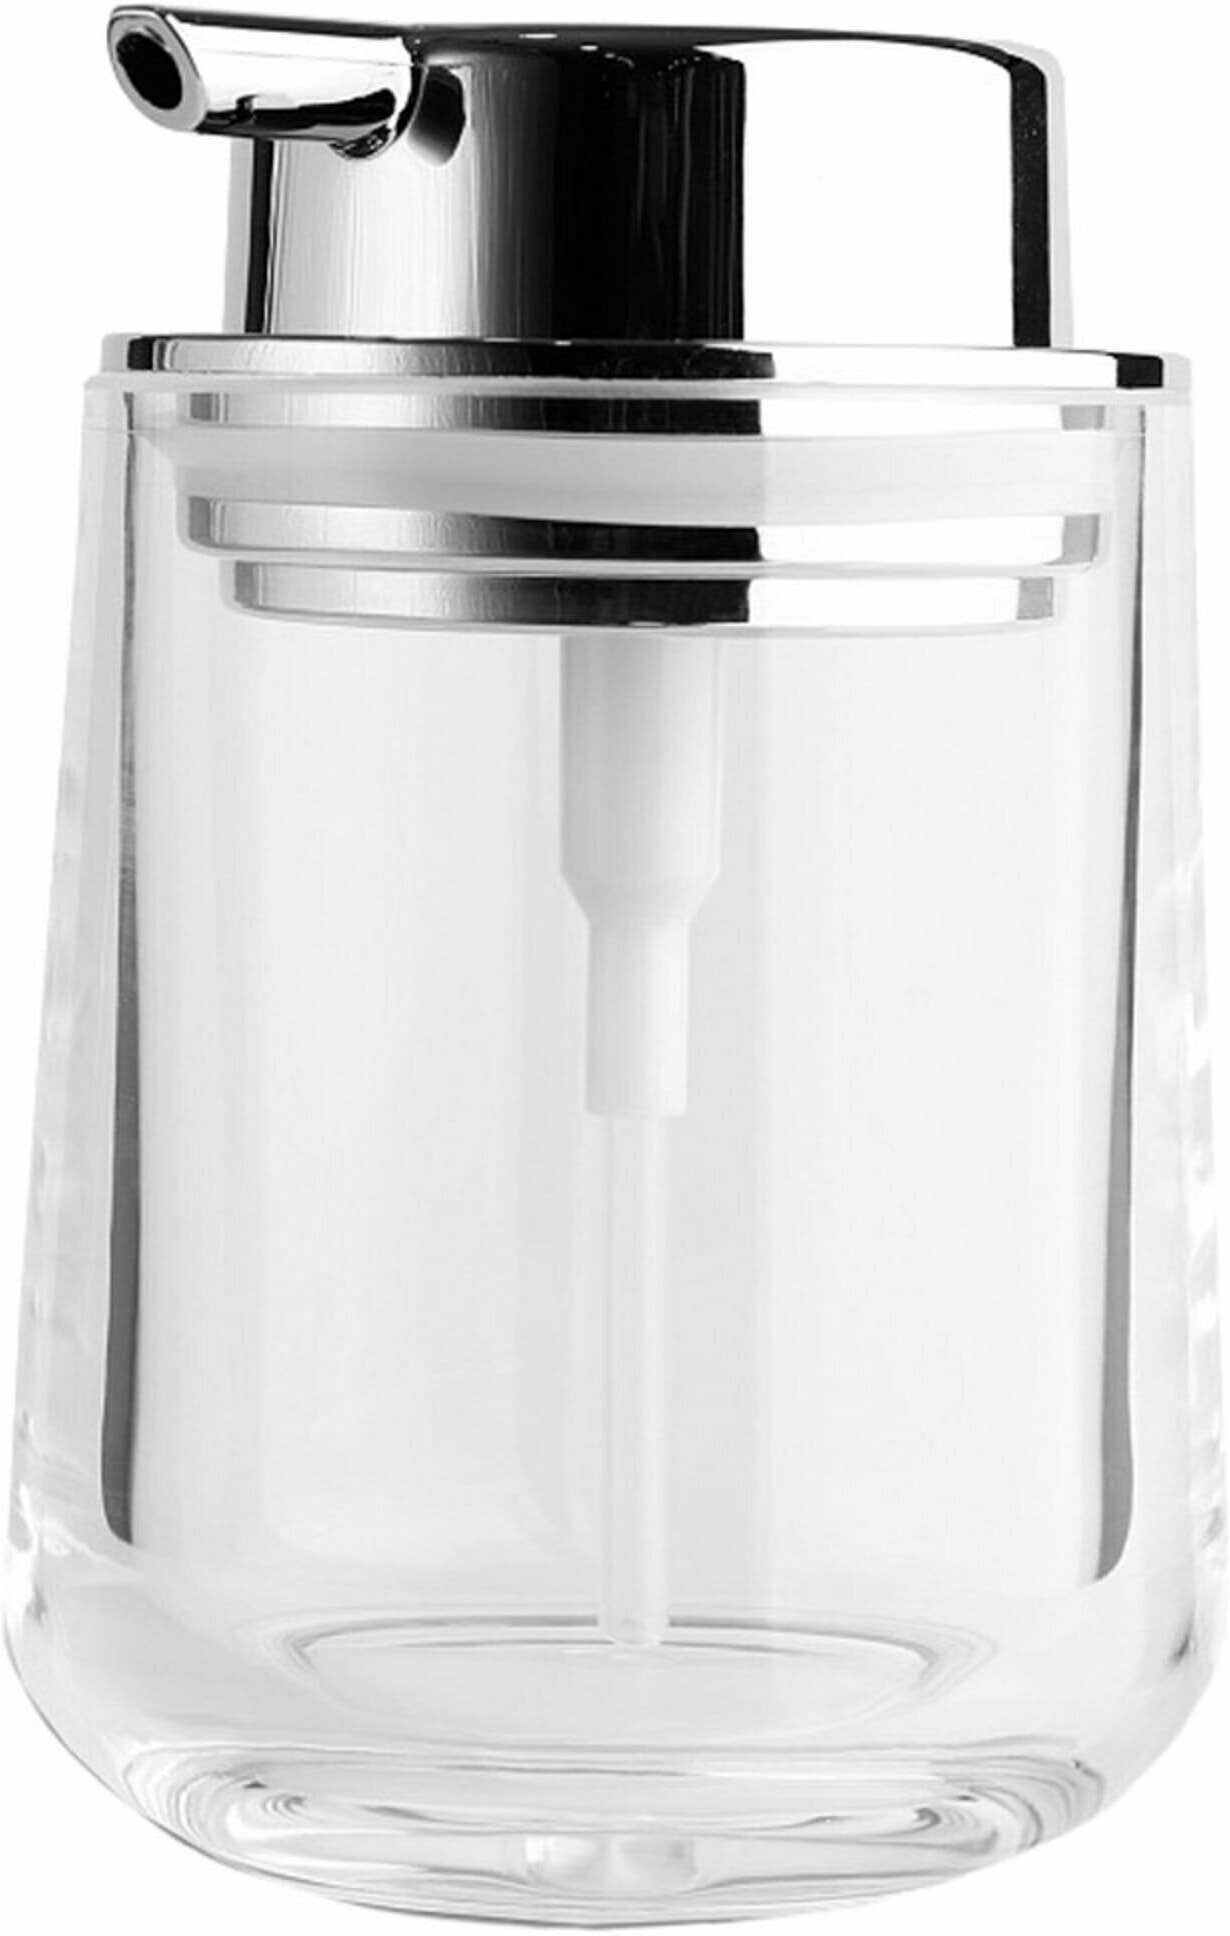 Дозатор для жидкого мыла Primanova серия: VETRO цвет: прозрачный материал: стекло настольный объем (мл.): 250 размер (см): 85x85x125 (D-20630)